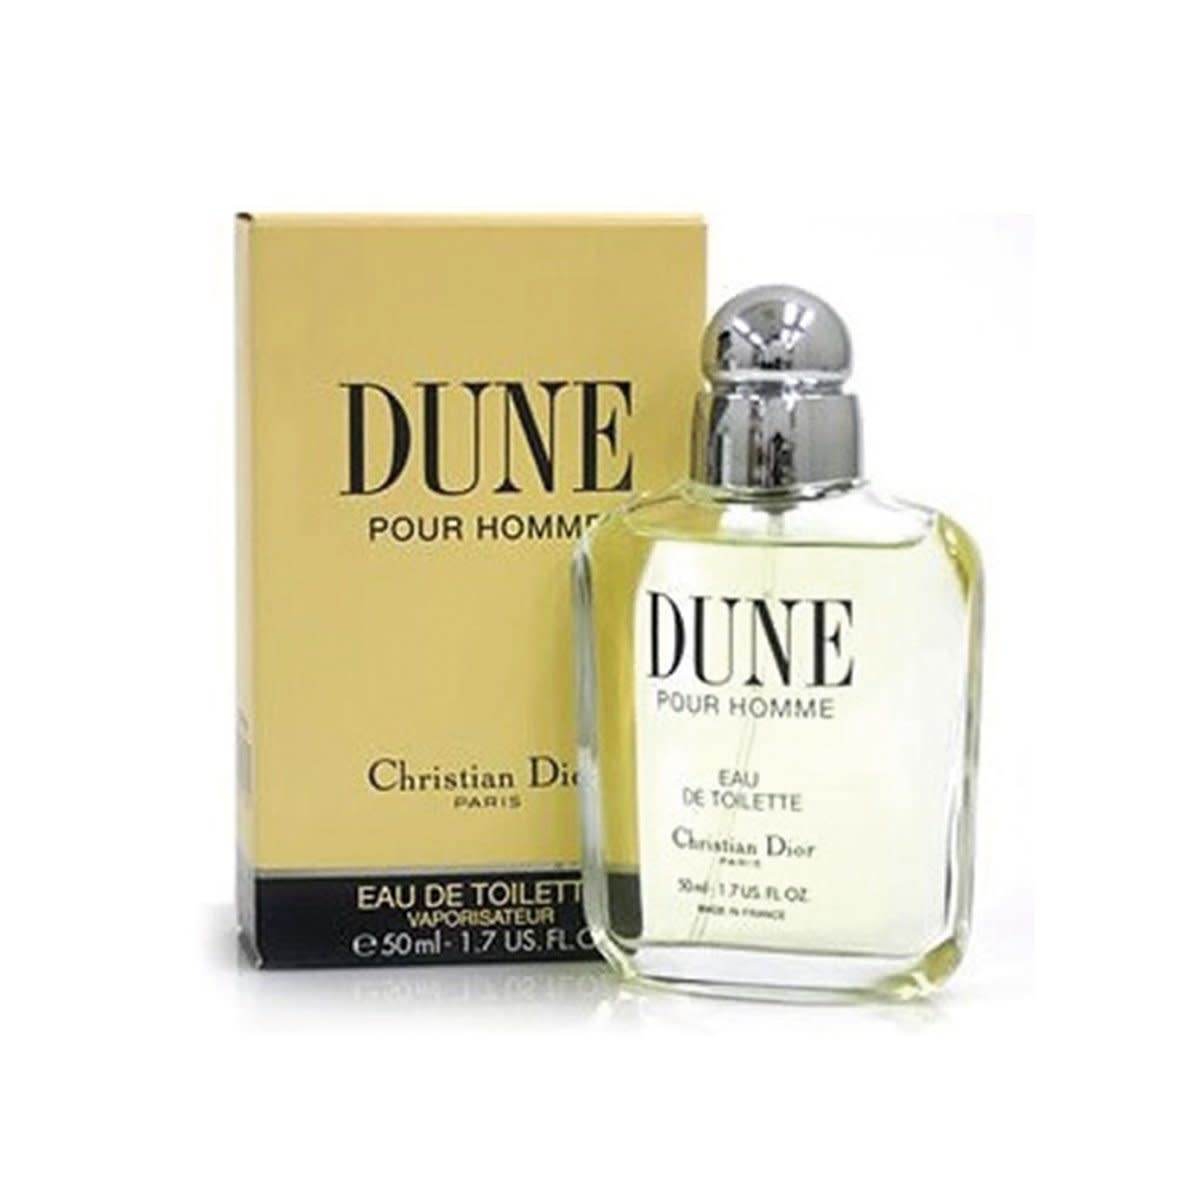 Christian Dior Dune Pour Homme Eau De Toilette Edt Spray 50ml  Etsy